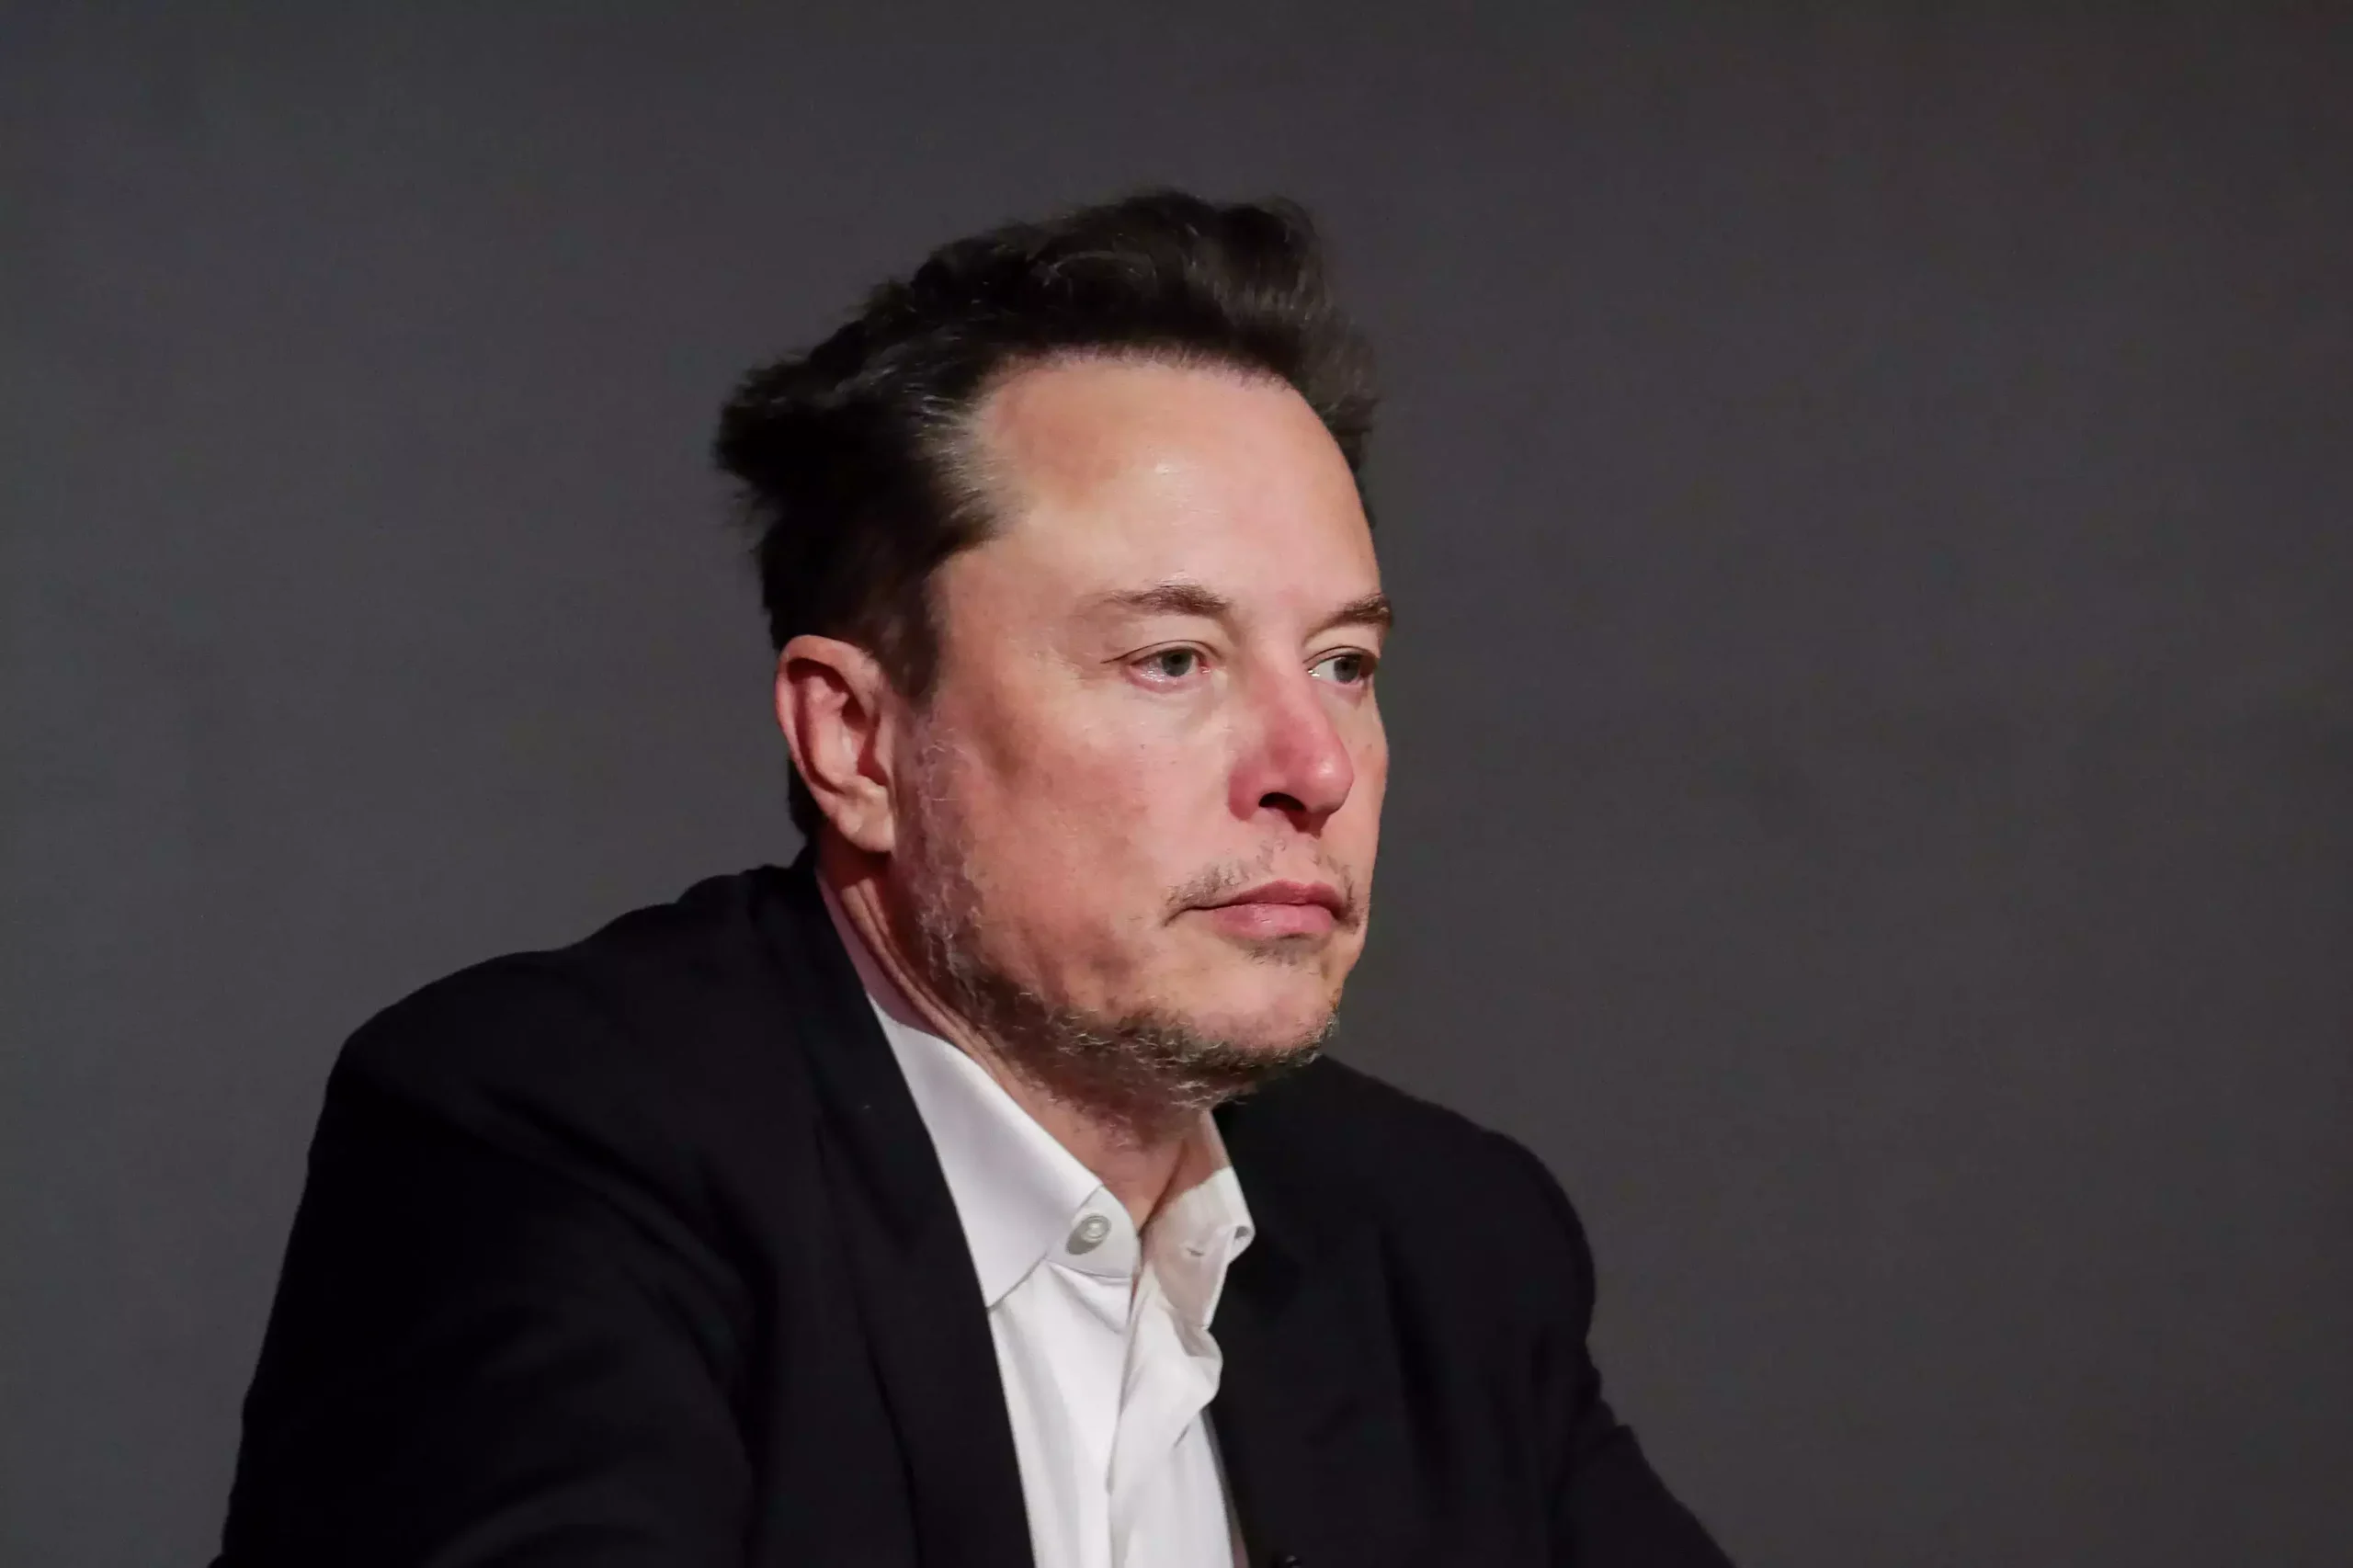 Elon Musk vs. MacKenzie Scott: Billionaires Battle Over Giving Back